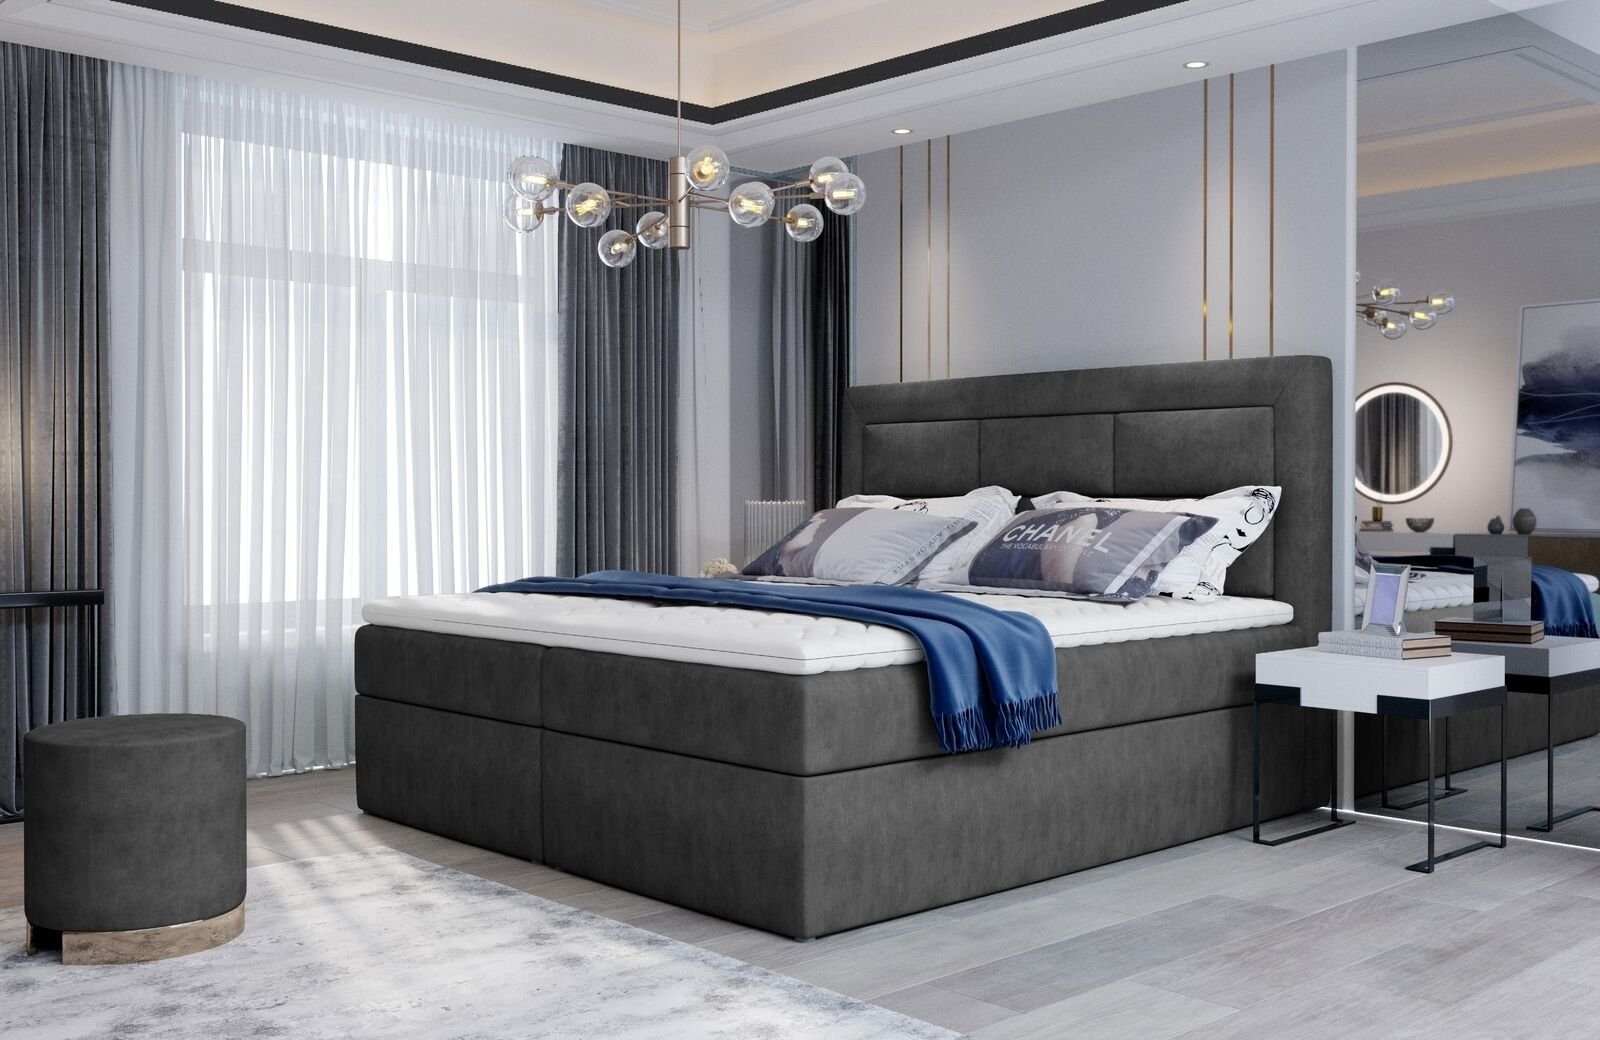 JVmoebel Bett, Textil Design Bett Doppel Betten Luxus Ehe Modernes Gestell